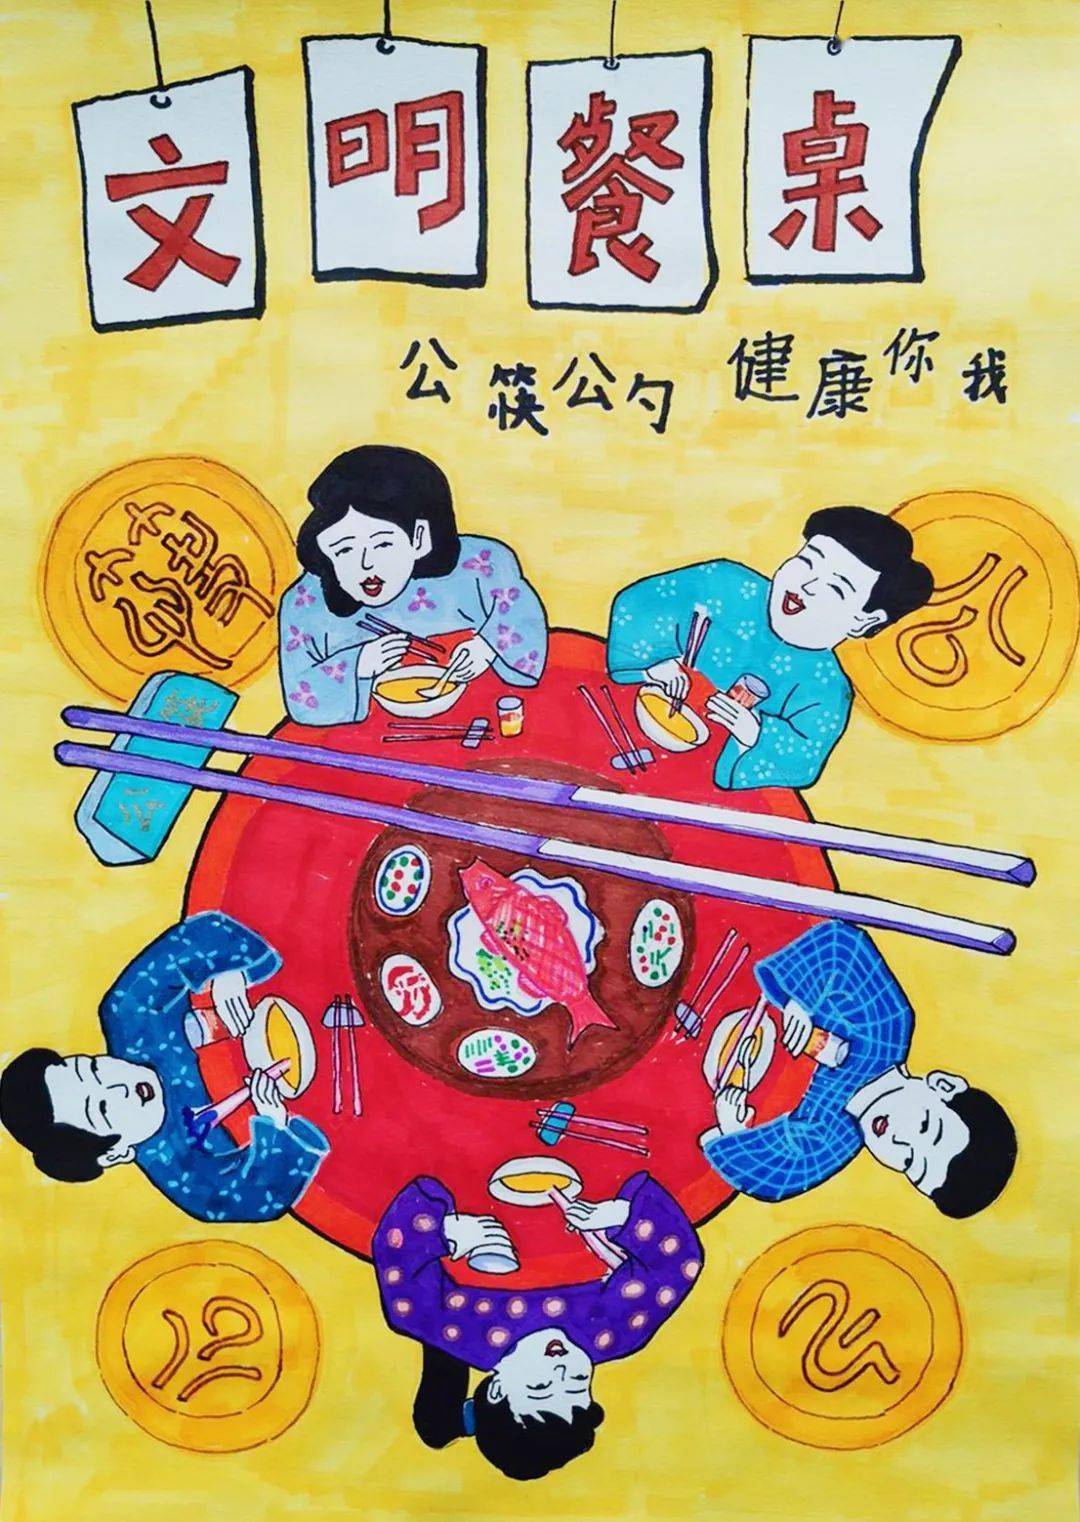 公筷公勺儿童绘画作品图片